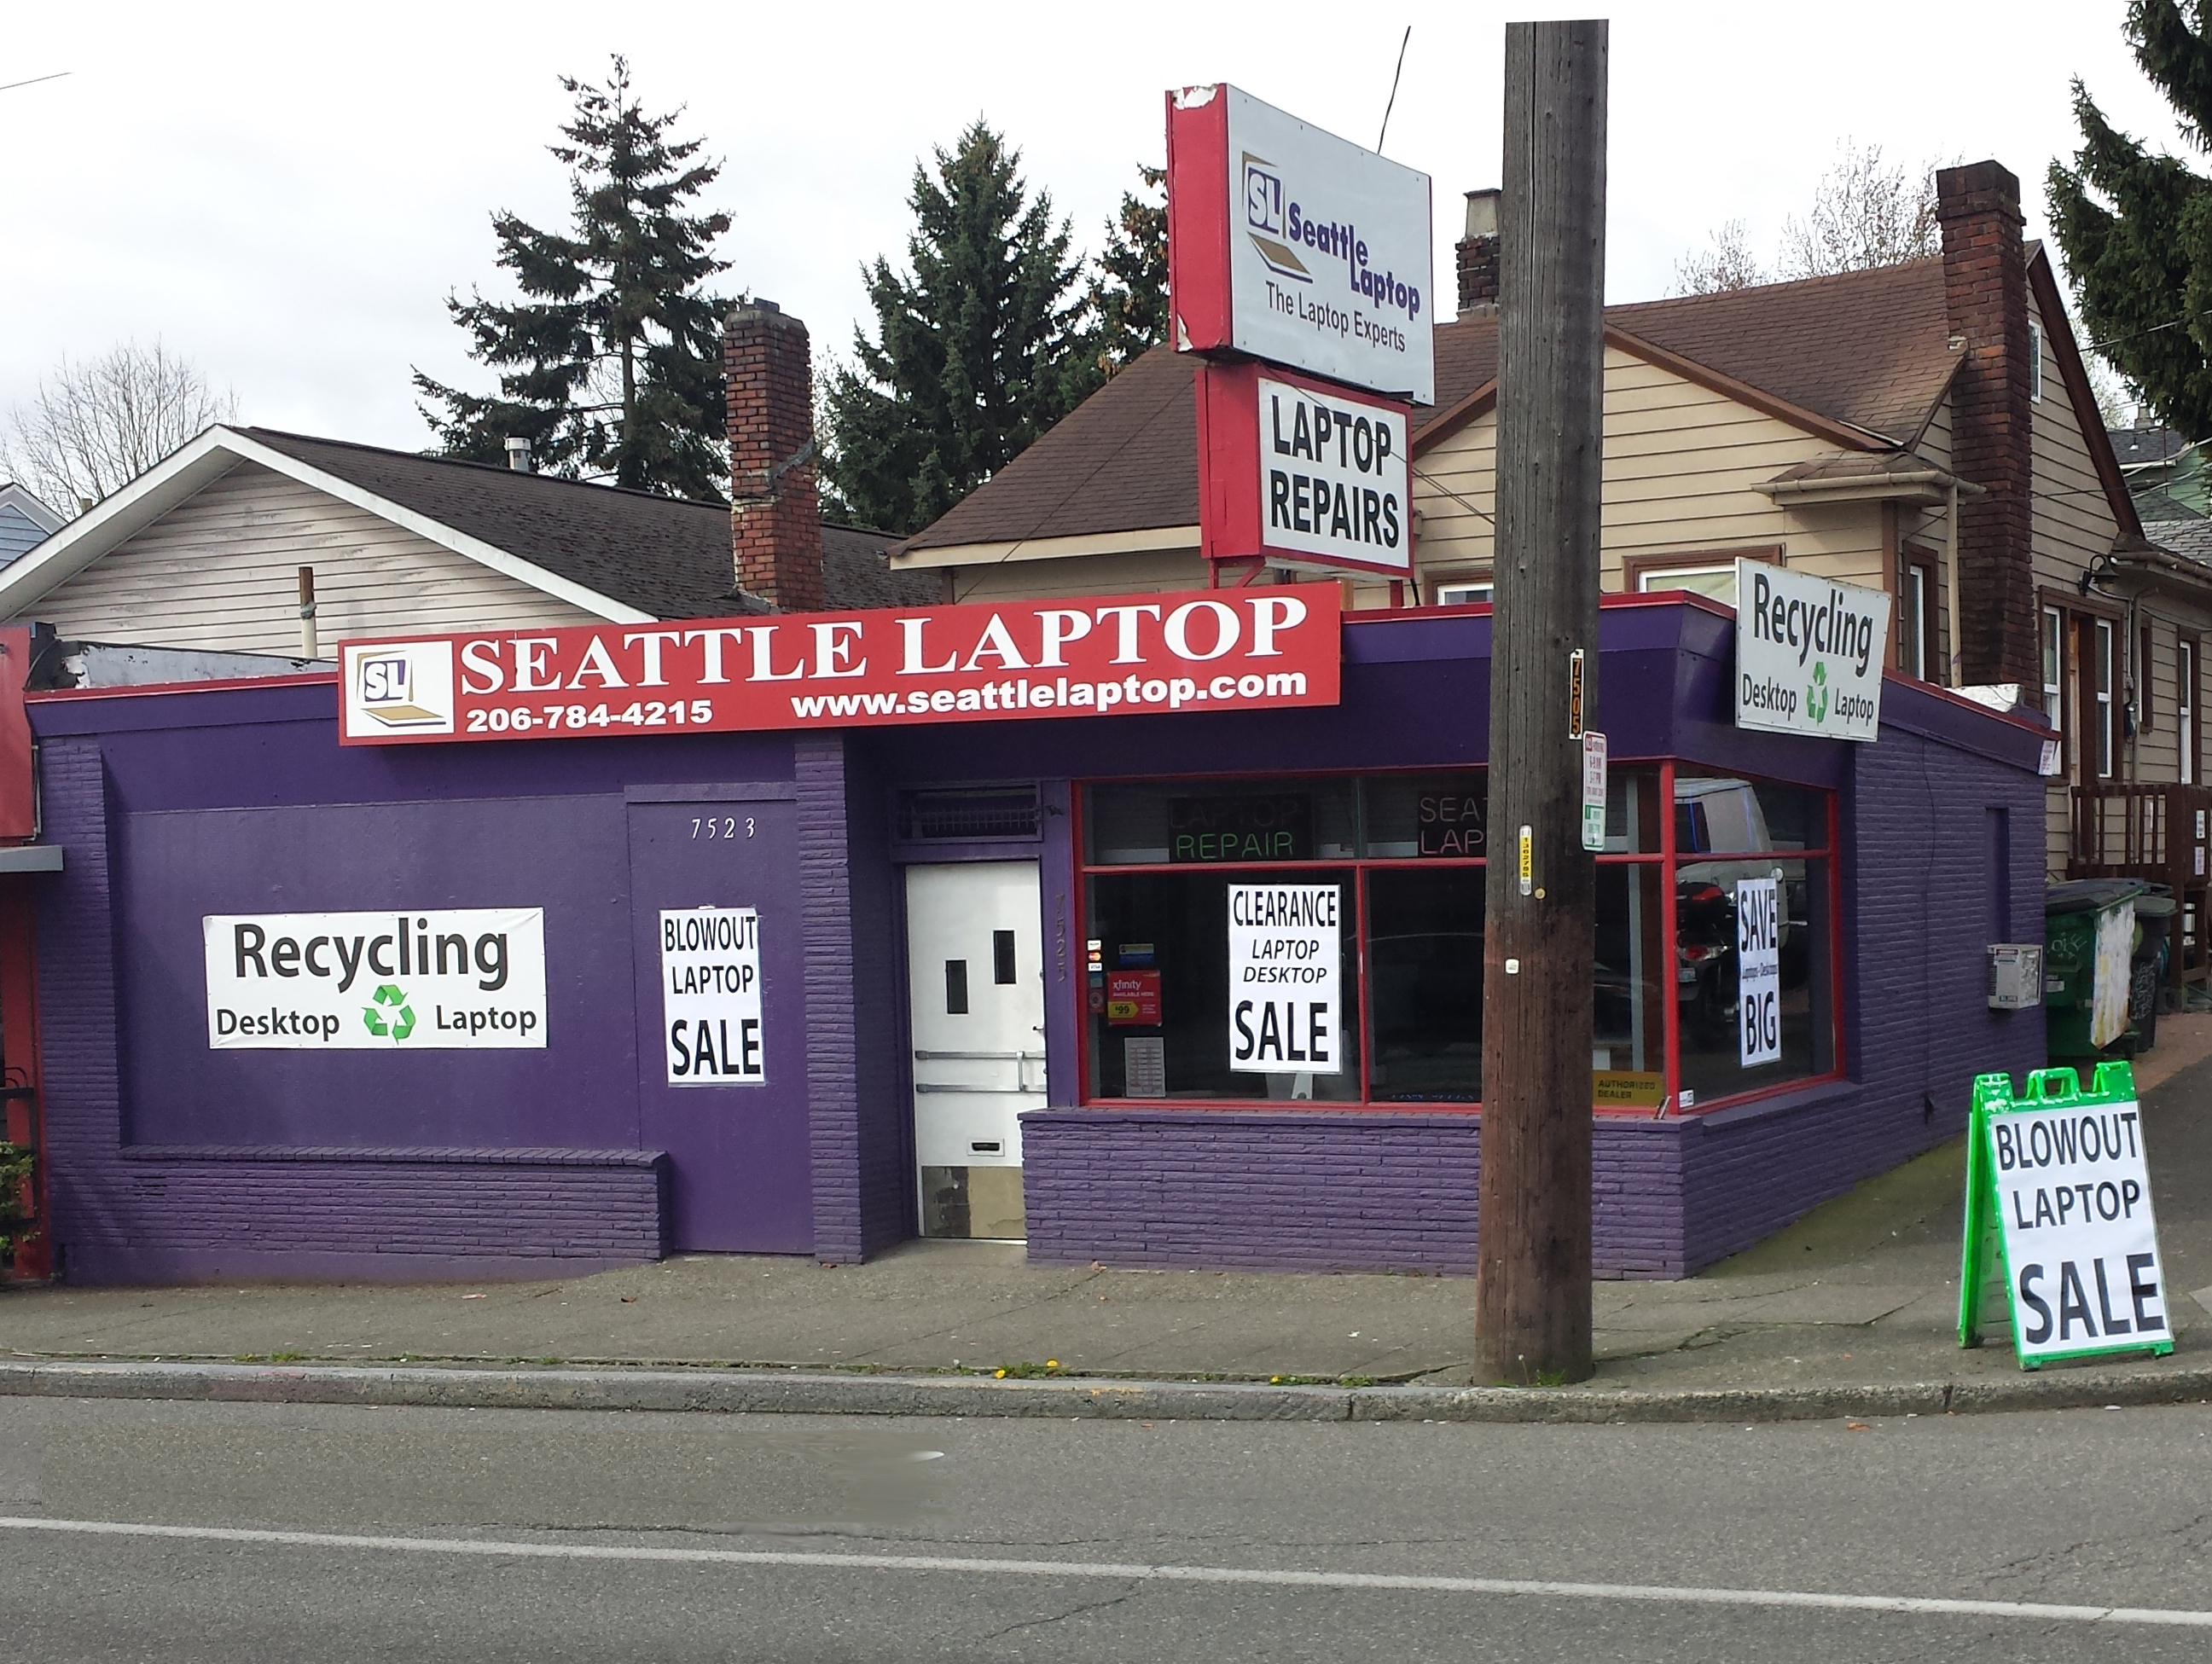 Seattle Laptop - LaptopRepair.net - MacBook Repair Specialists